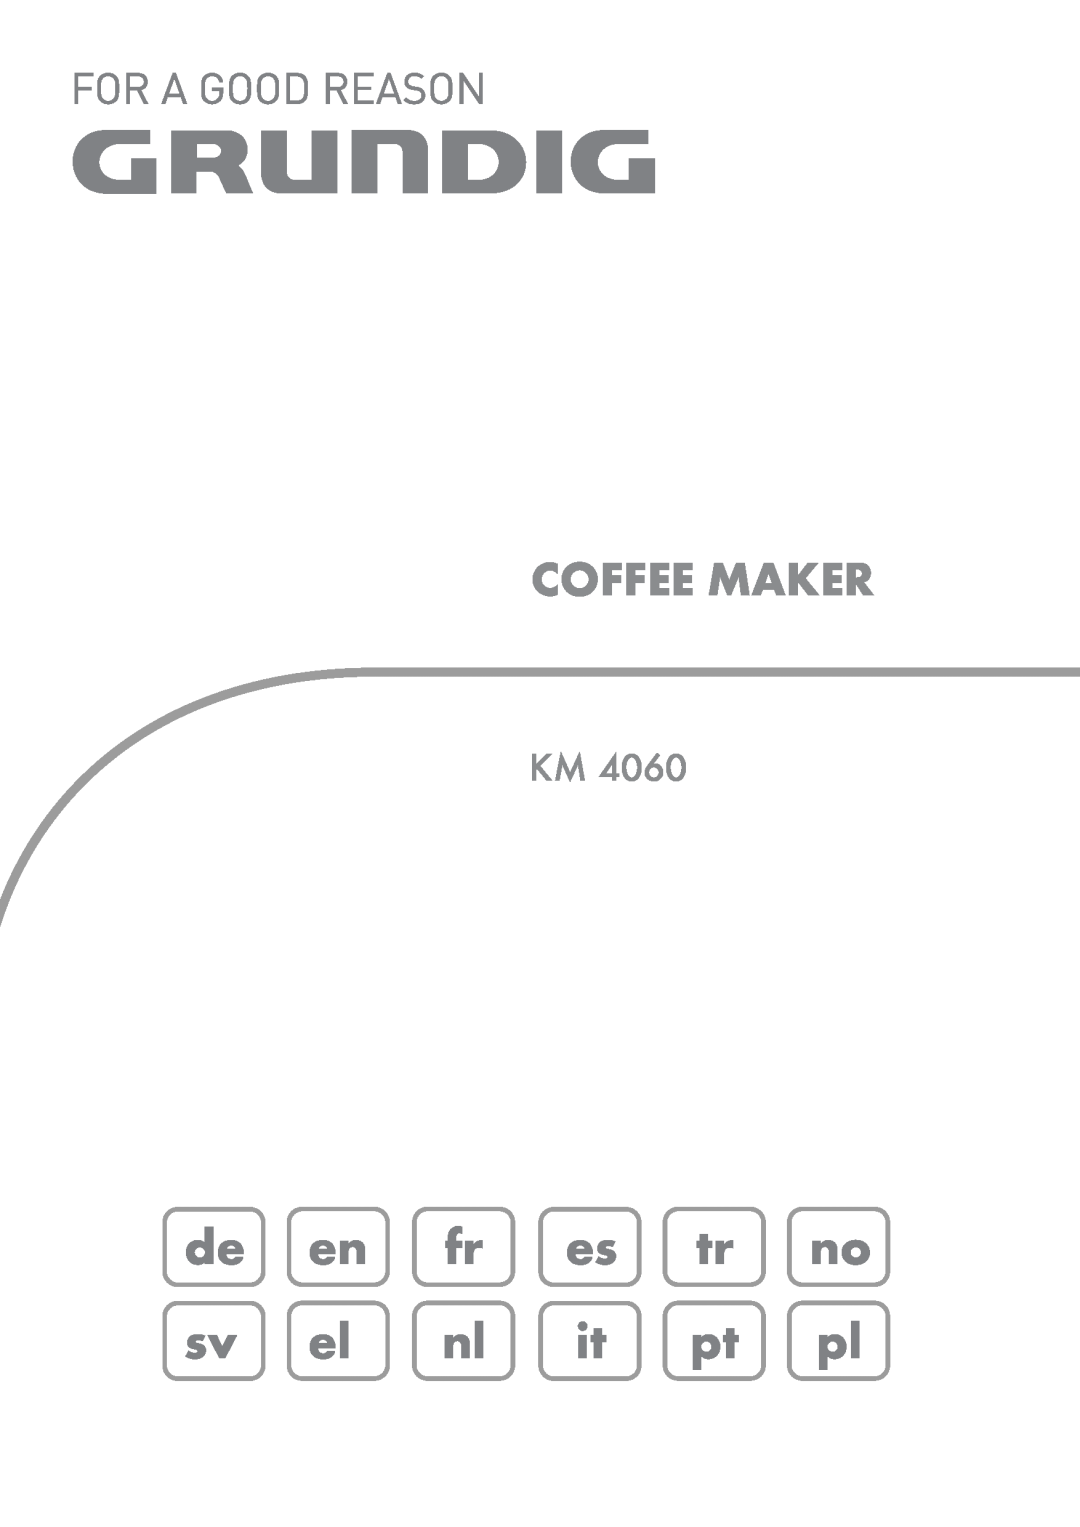 Grundig KM 4060 manual de en fr es tr no sv el nl it pt pl, Coffee Maker 